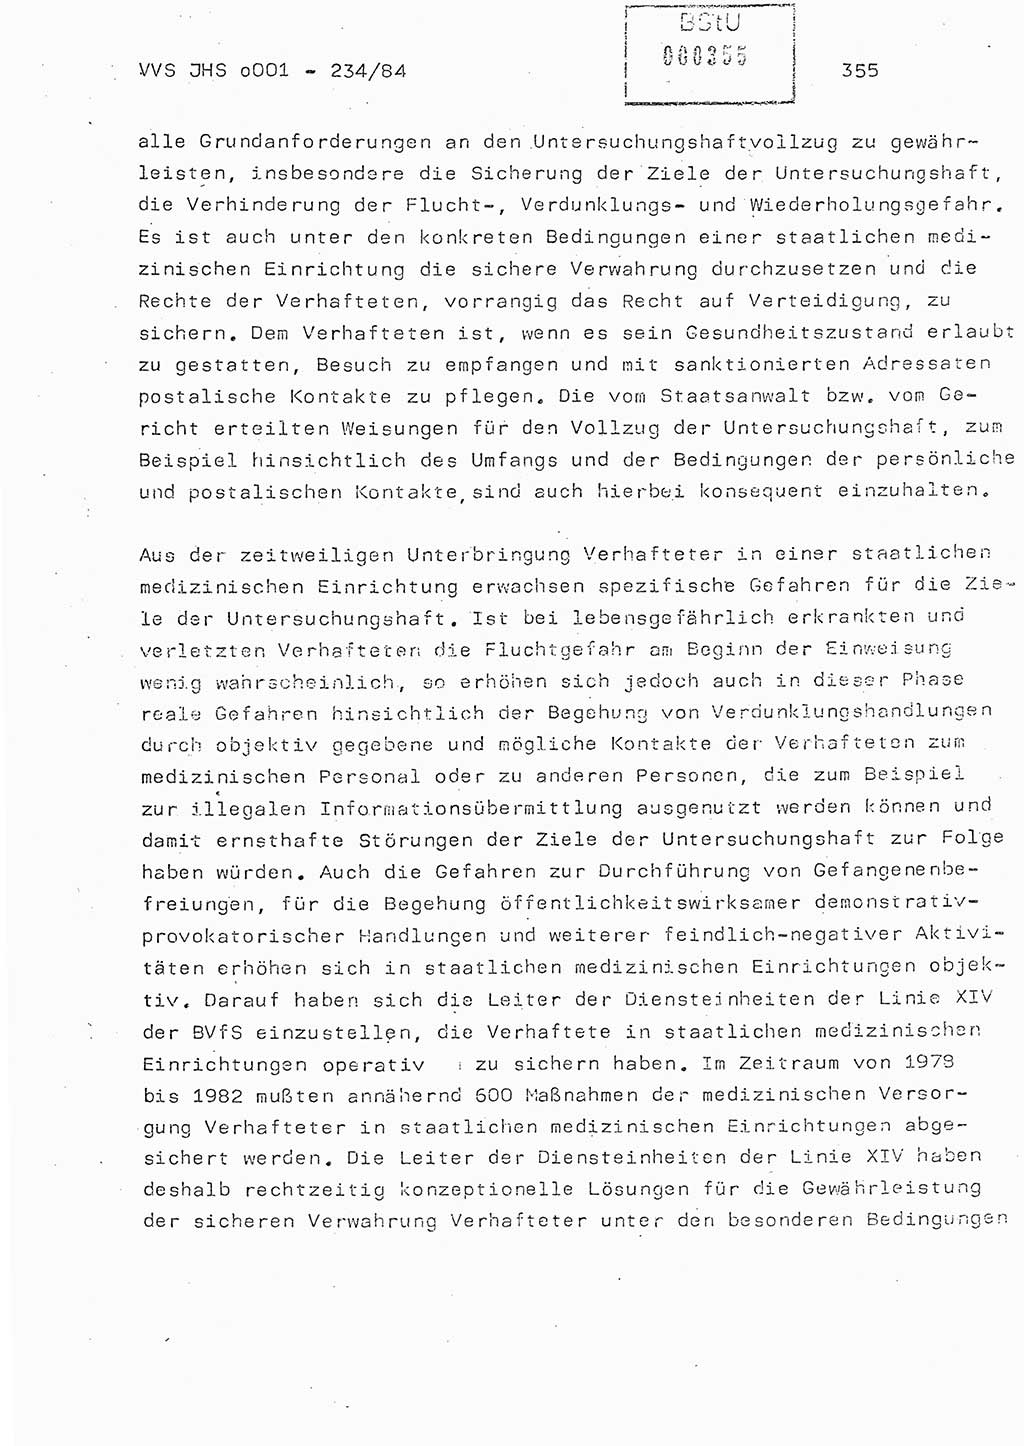 Dissertation Oberst Siegfried Rataizick (Abt. ⅩⅣ), Oberstleutnant Volkmar Heinz (Abt. ⅩⅣ), Oberstleutnant Werner Stein (HA Ⅸ), Hauptmann Heinz Conrad (JHS), Ministerium für Staatssicherheit (MfS) [Deutsche Demokratische Republik (DDR)], Juristische Hochschule (JHS), Vertrauliche Verschlußsache (VVS) o001-234/84, Potsdam 1984, Seite 355 (Diss. MfS DDR JHS VVS o001-234/84 1984, S. 355)